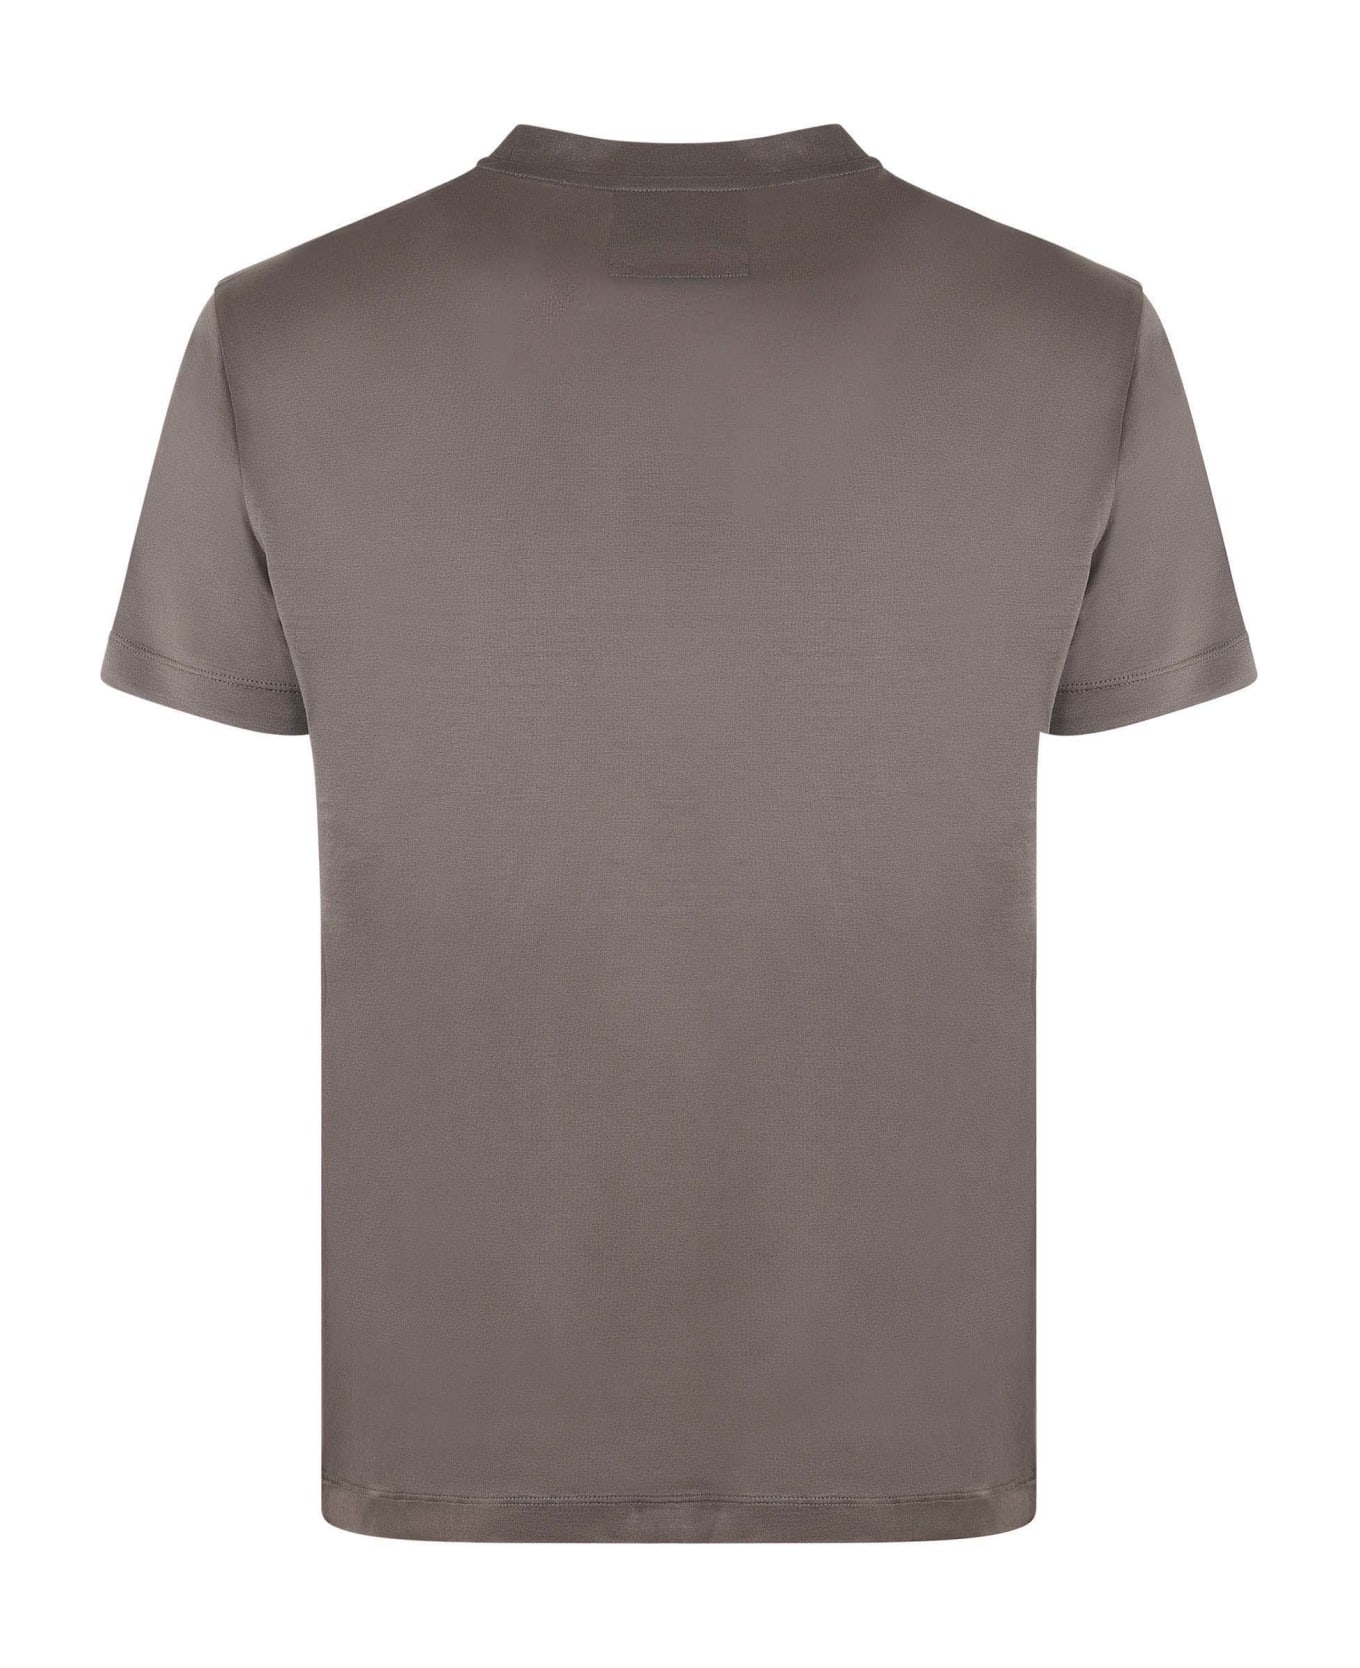 Emporio Armani Cotton T-shirt - Tortora